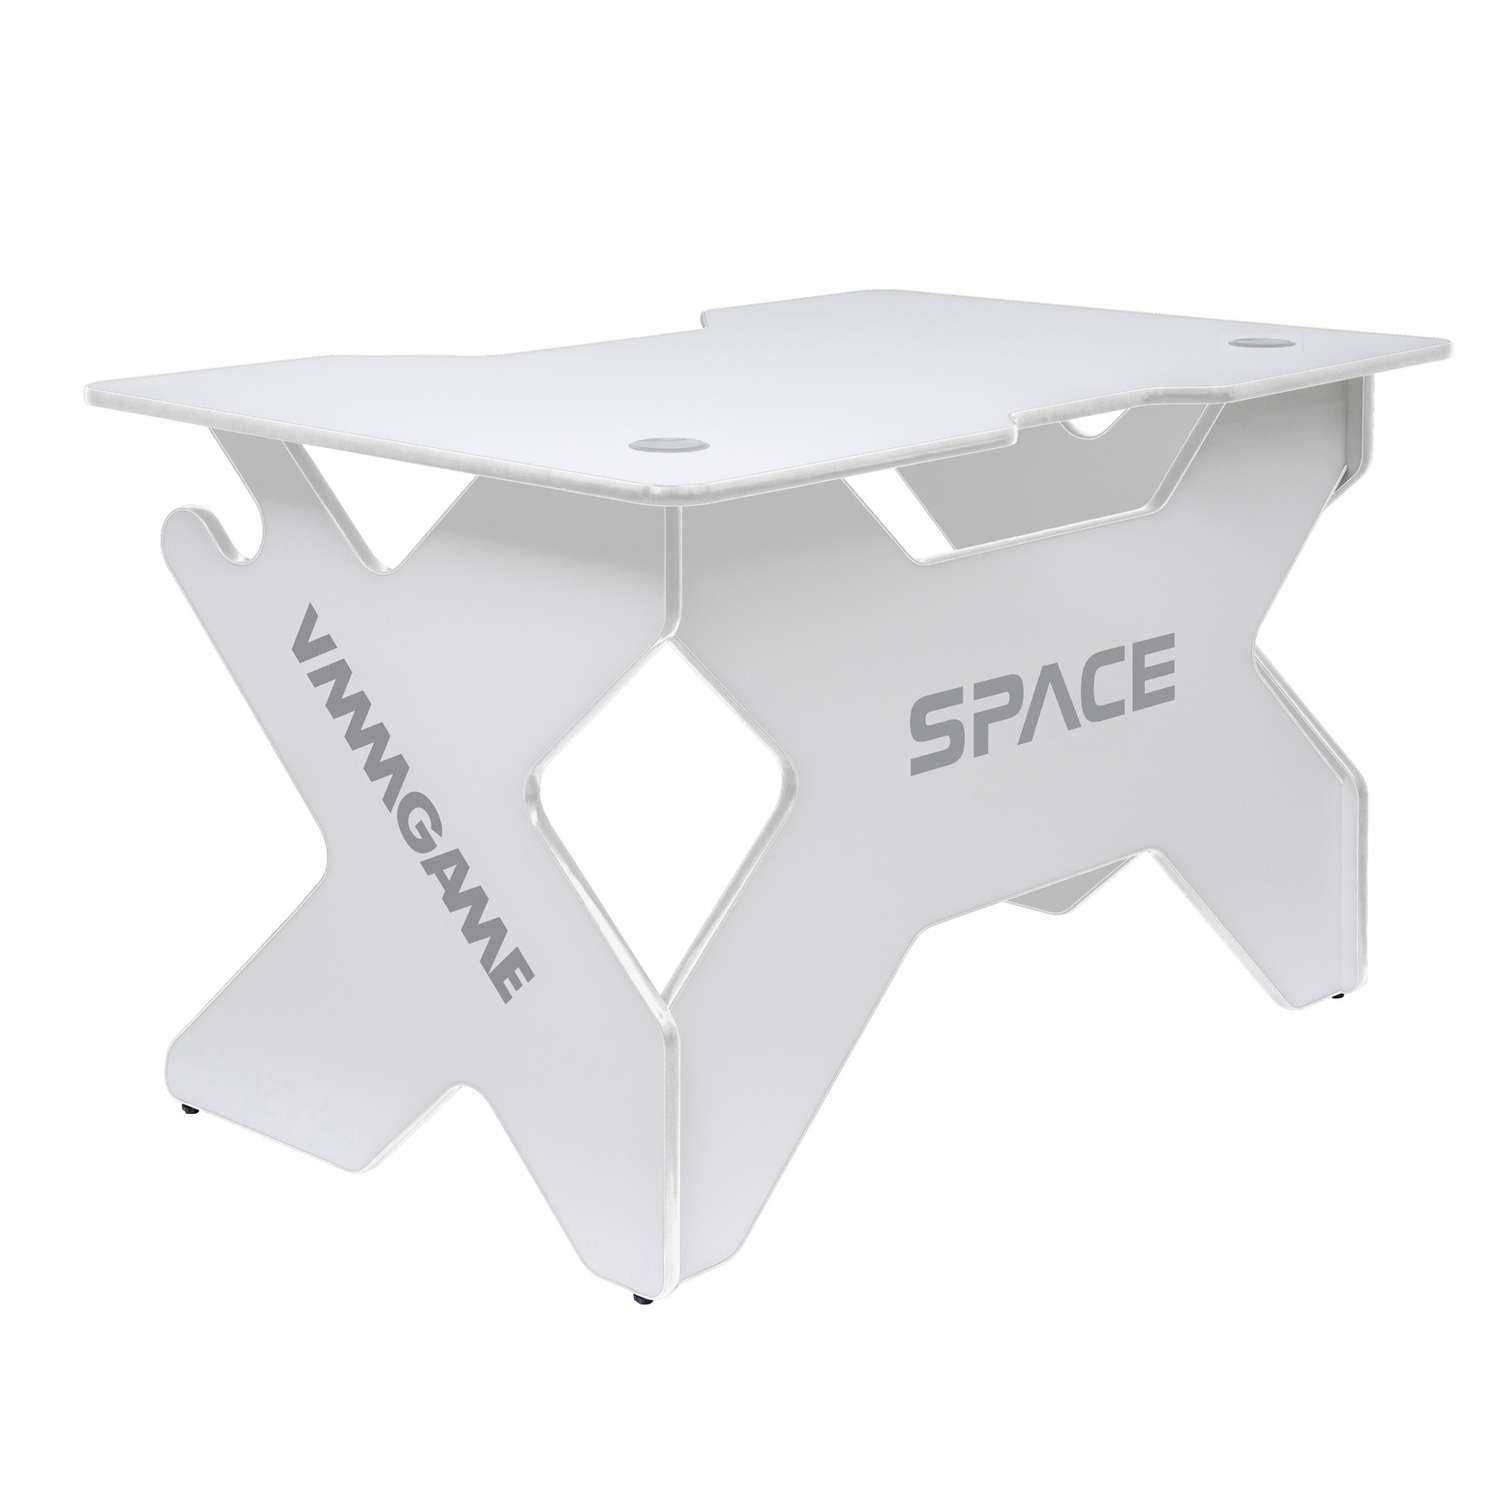 Vmmgame стол 140. Игровой компьютерный стол vmmgame Space 140. Игровой компьютерный стол vmmgame Space Lunar. Стол vmmgame Space 140 Light Blue (St-3wbe). Vmmgame space